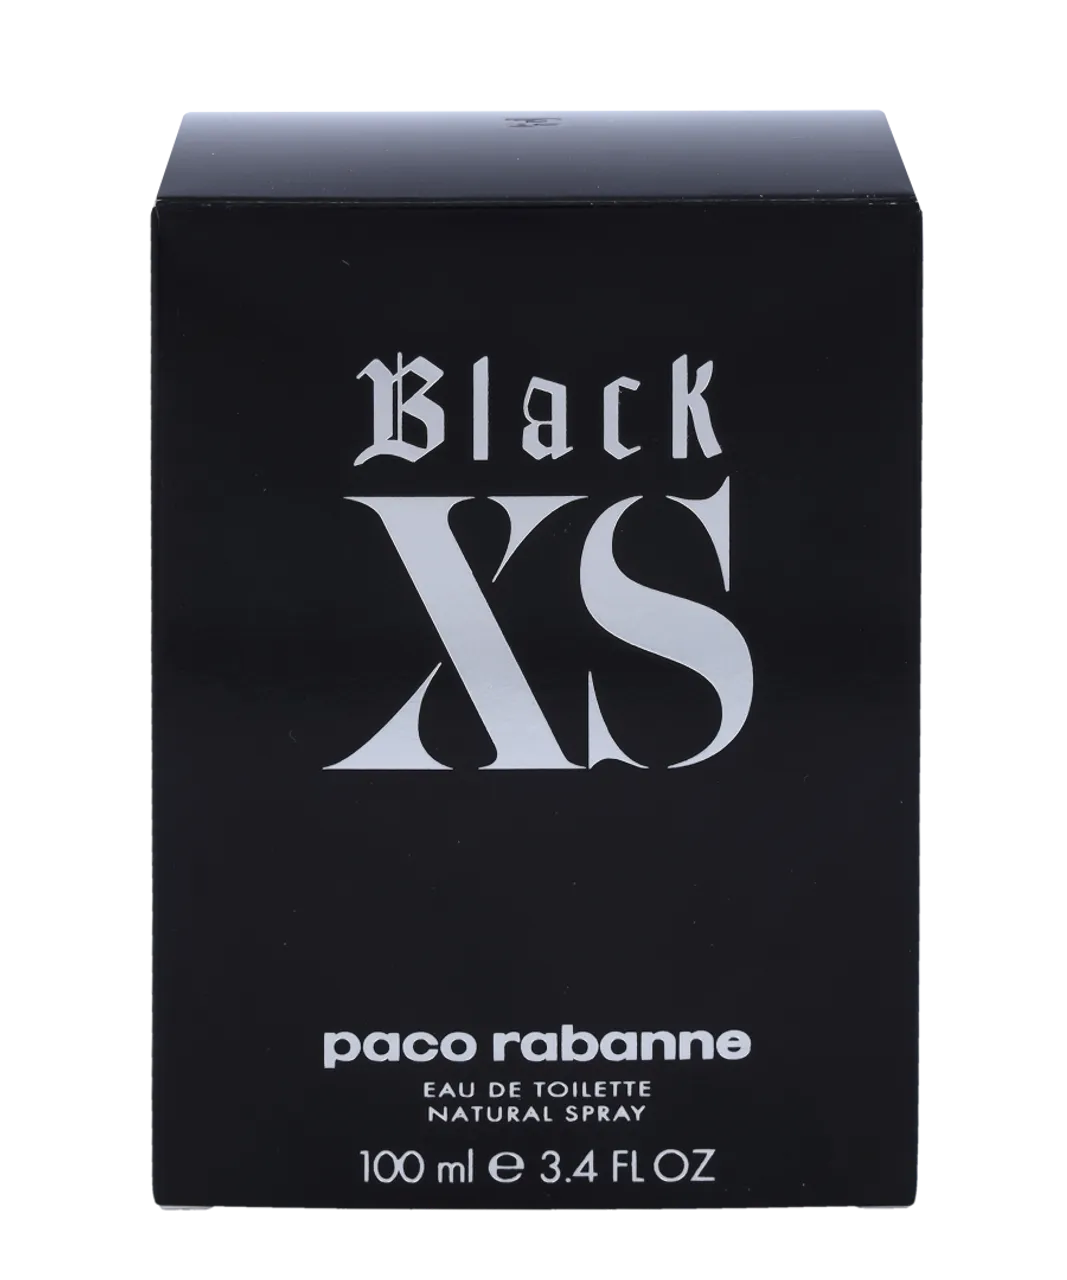 Paco Rabanne Mens Black Xs Eau de Toilette 100ml - One Size